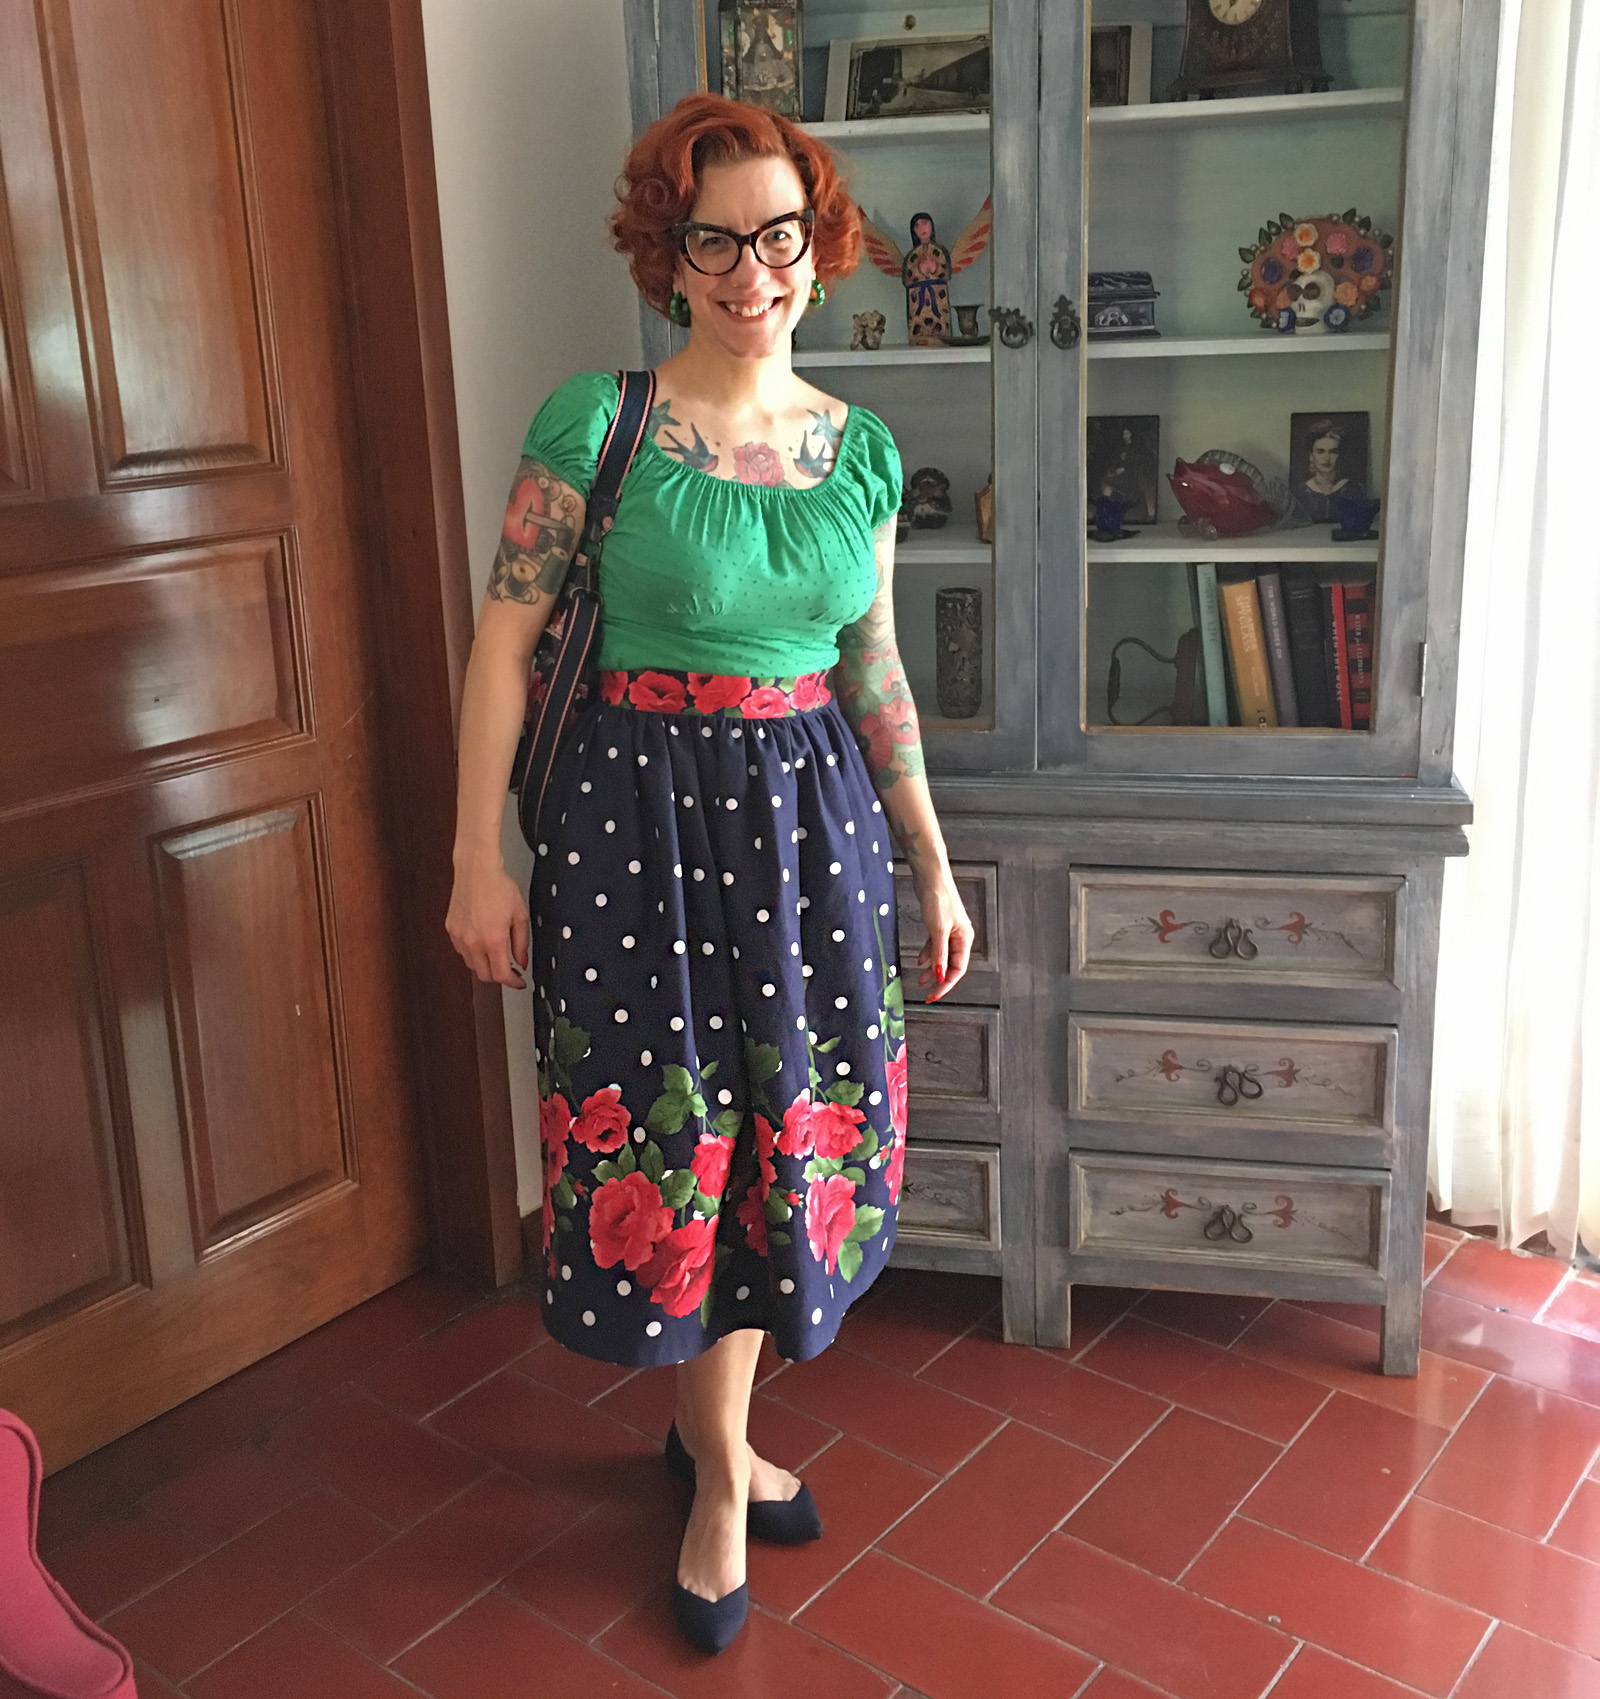 Tasha wearing a polka dot and rose print skirt